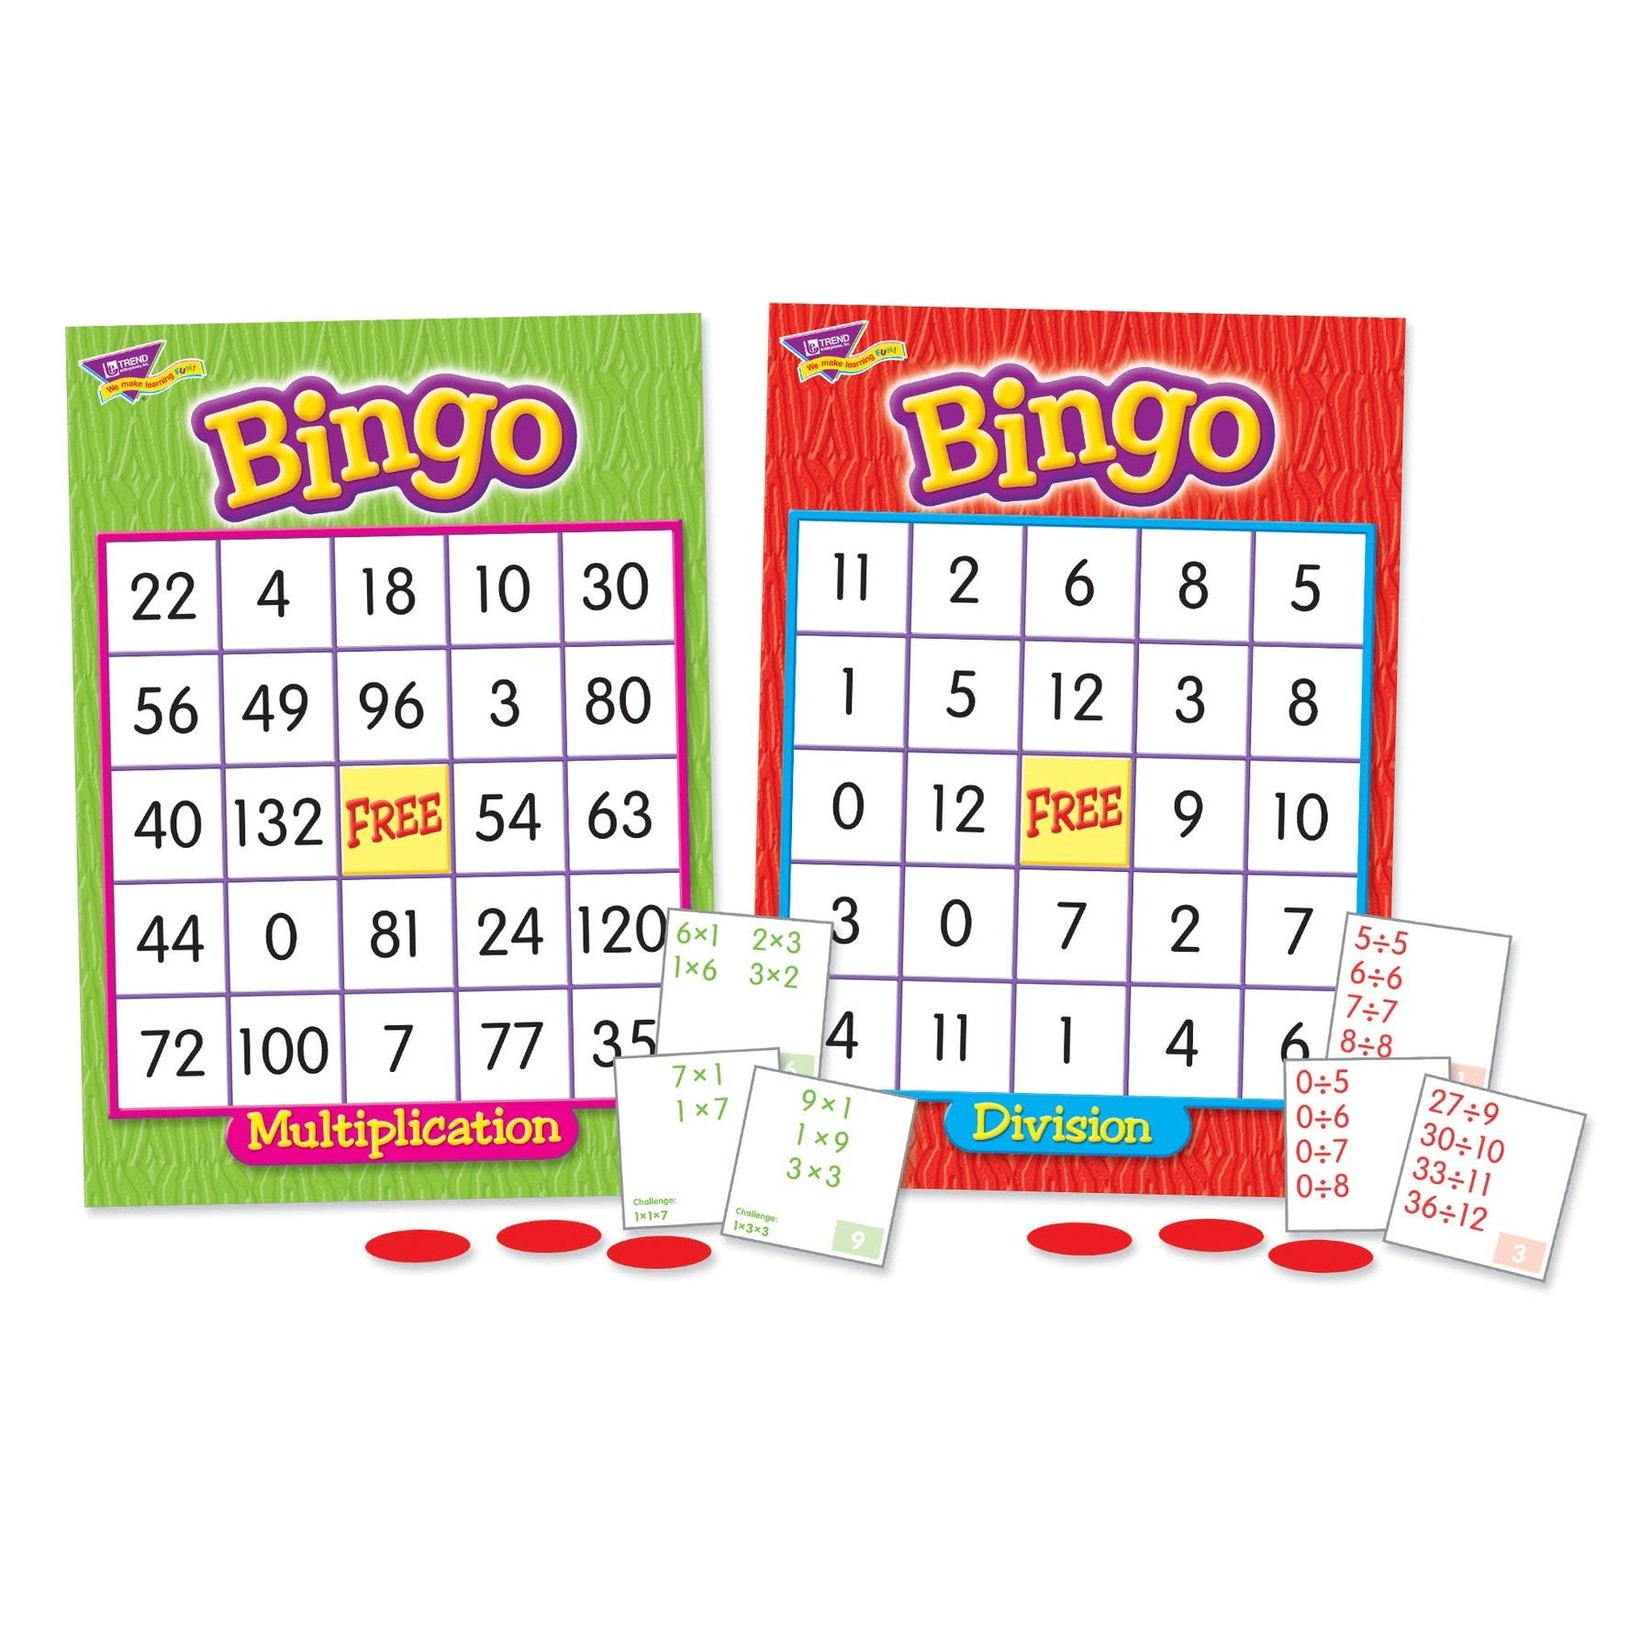 TREND ENTERPRISES INC Multiplication & Division Bingo Game